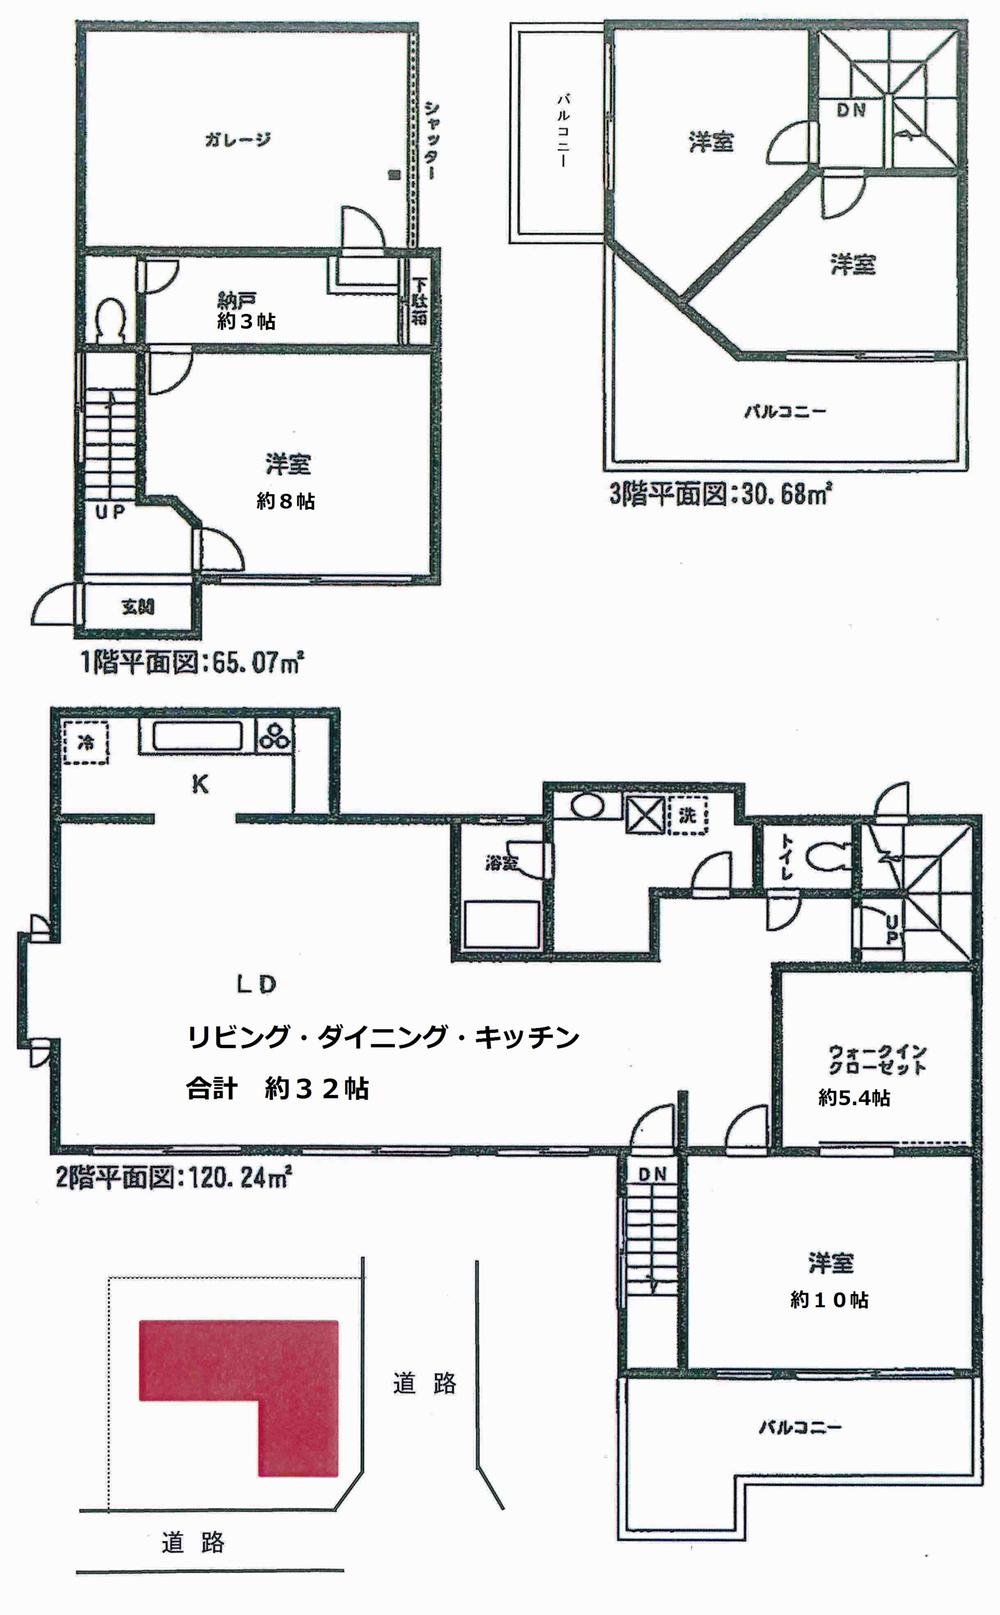 67 million yen, 4LDK, Land area 302.41 sq m , Building area 215.99 sq m